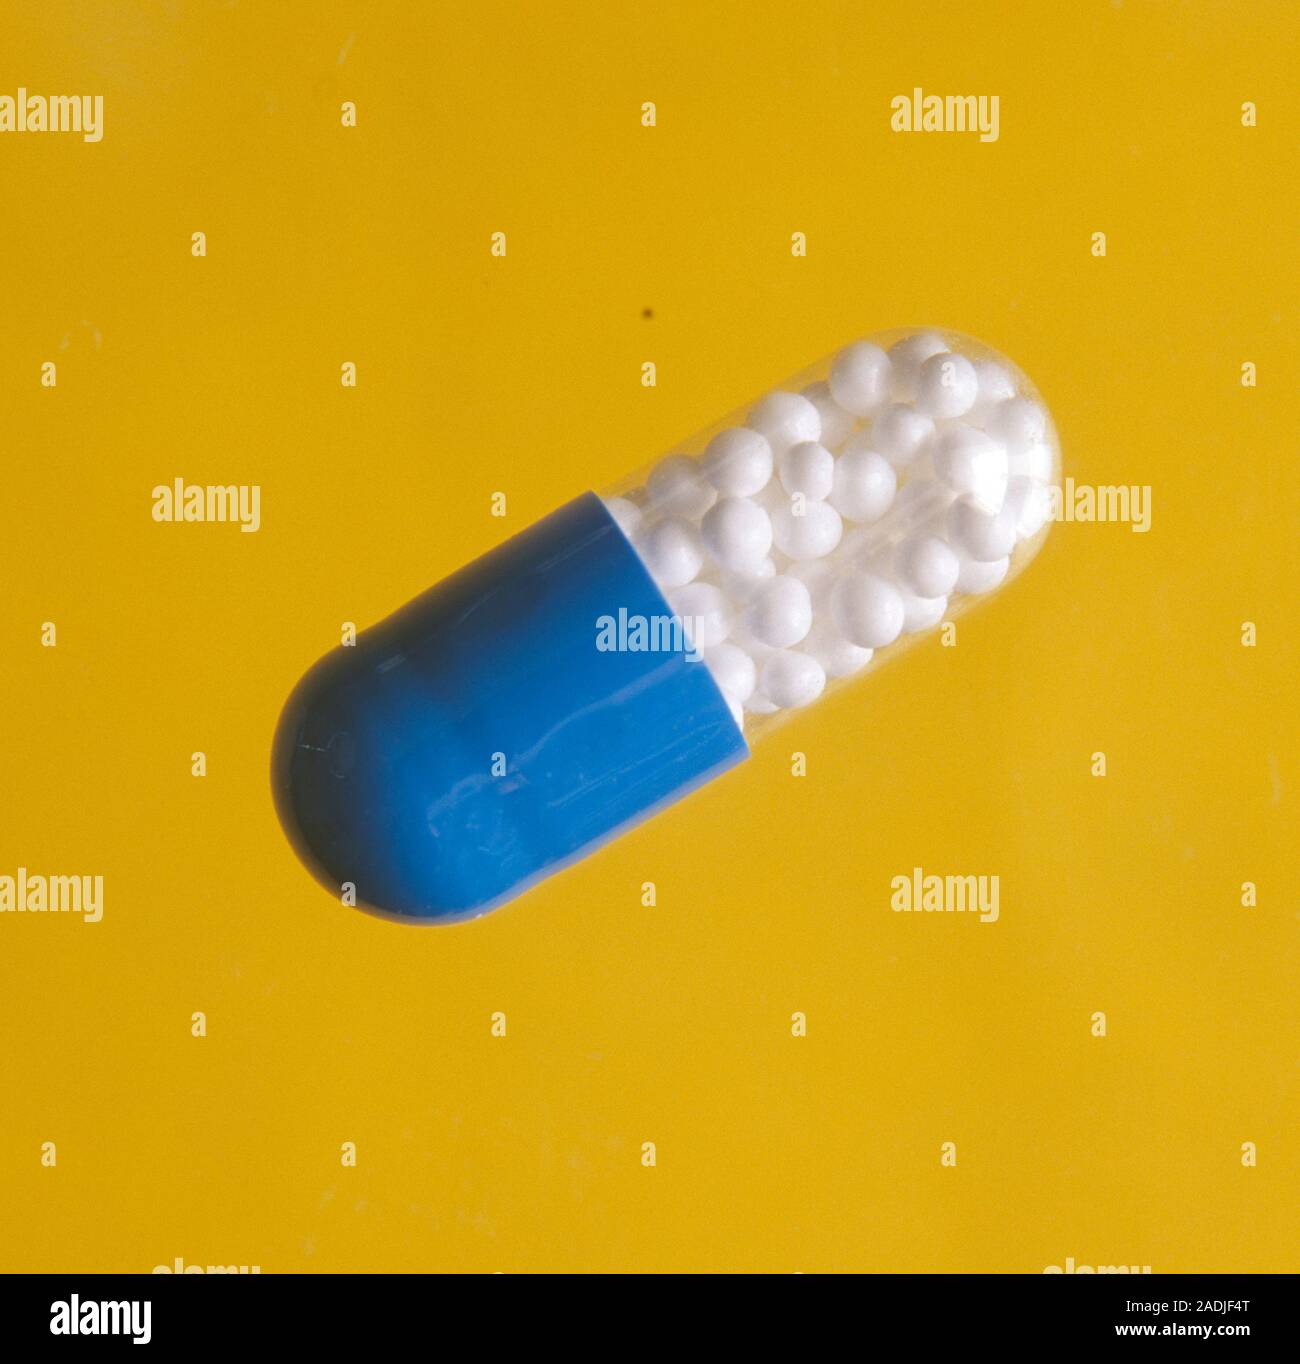 Antidolorifiche capsula. Tale capsula contiene l'azione antidolorifica  (analgesico) farmaco ibuprofene. Il farmaco è contenuto in piccole sfere  visto internamente la capsul Foto stock - Alamy